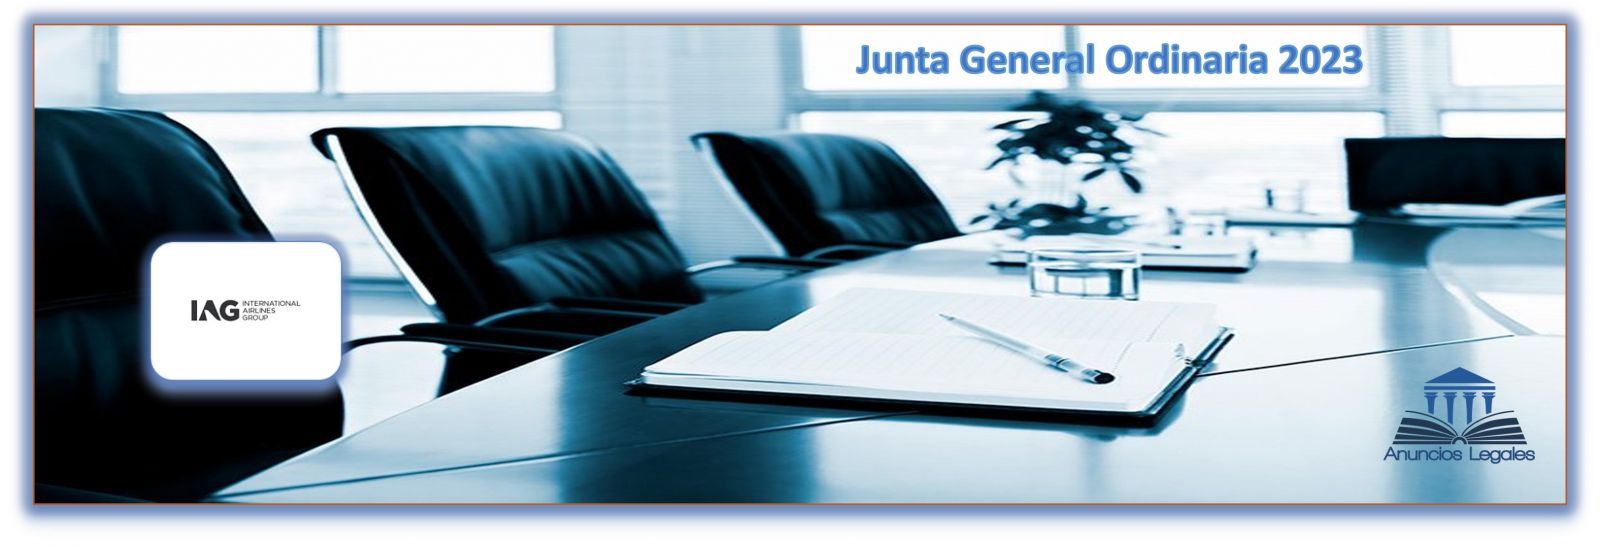 La sociedad IAG anuncia Junta General Ordinaria de Accionistas 2023